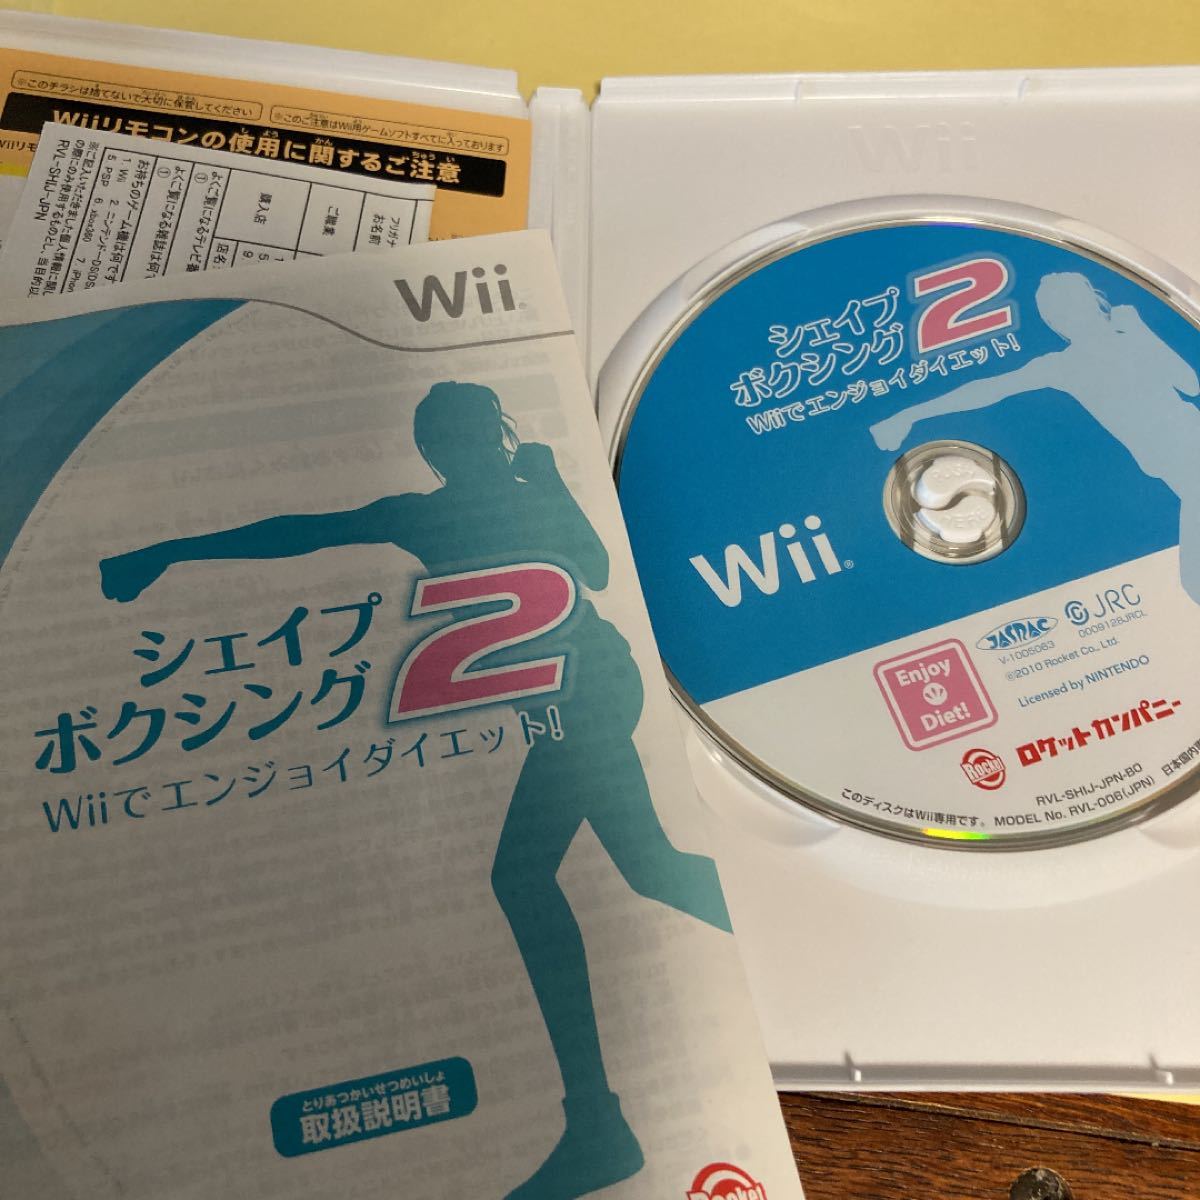 シェイプボクシング2 Wiiでエンジョイダイエット! Wii